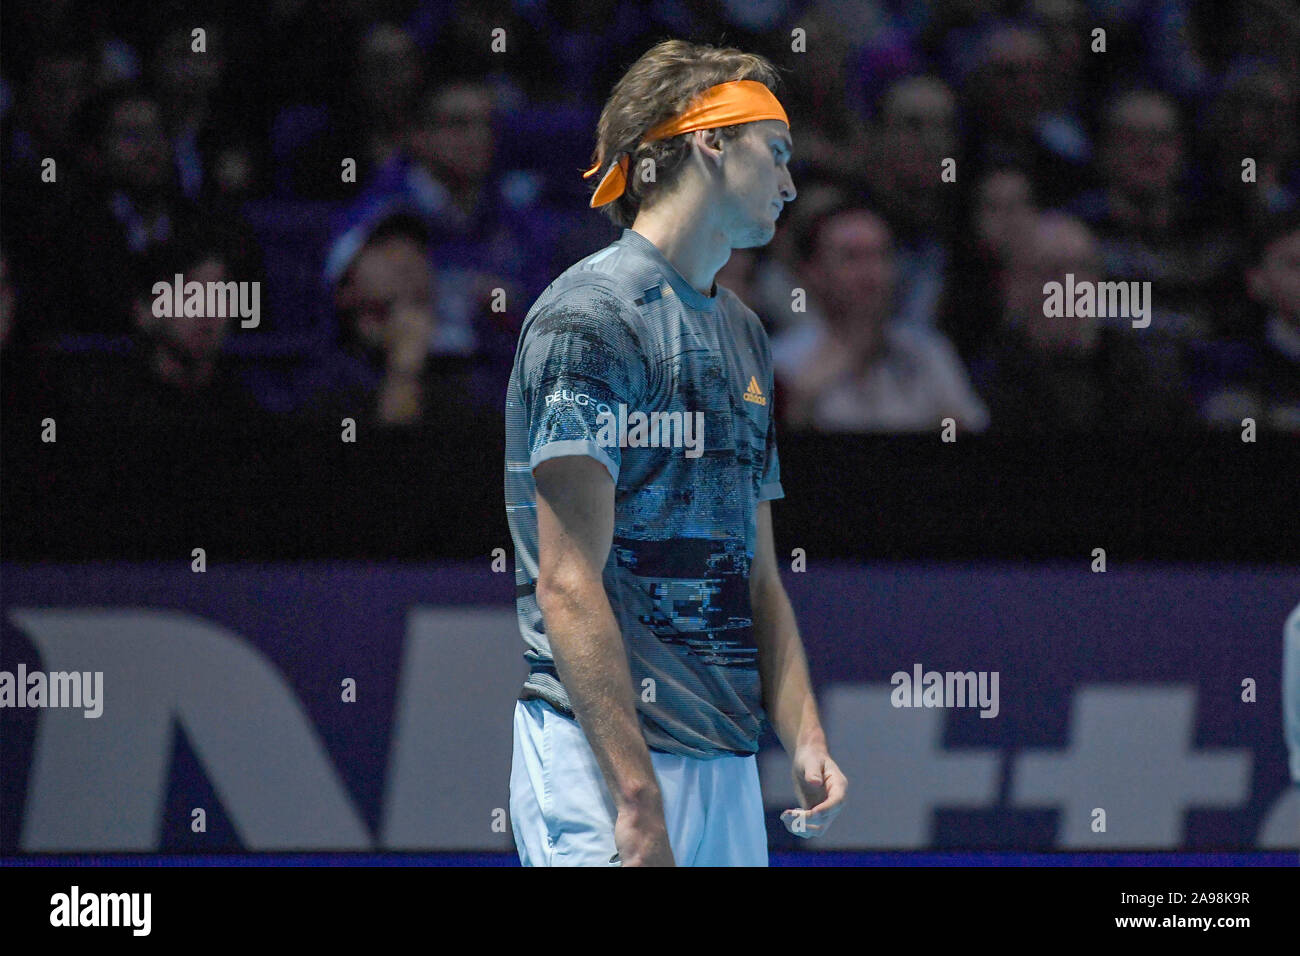 Londres, Royaume-Uni, 13 Nov 2019, Alexander zverev, ger, lors de l'ATP Nitto STEFANOS TSITSIPAS Final Vs ALEXANDER ZVEREV - Internationaux de Tennis - Crédit : LPS/Roberto Zanettin/Alamy Live News Banque D'Images